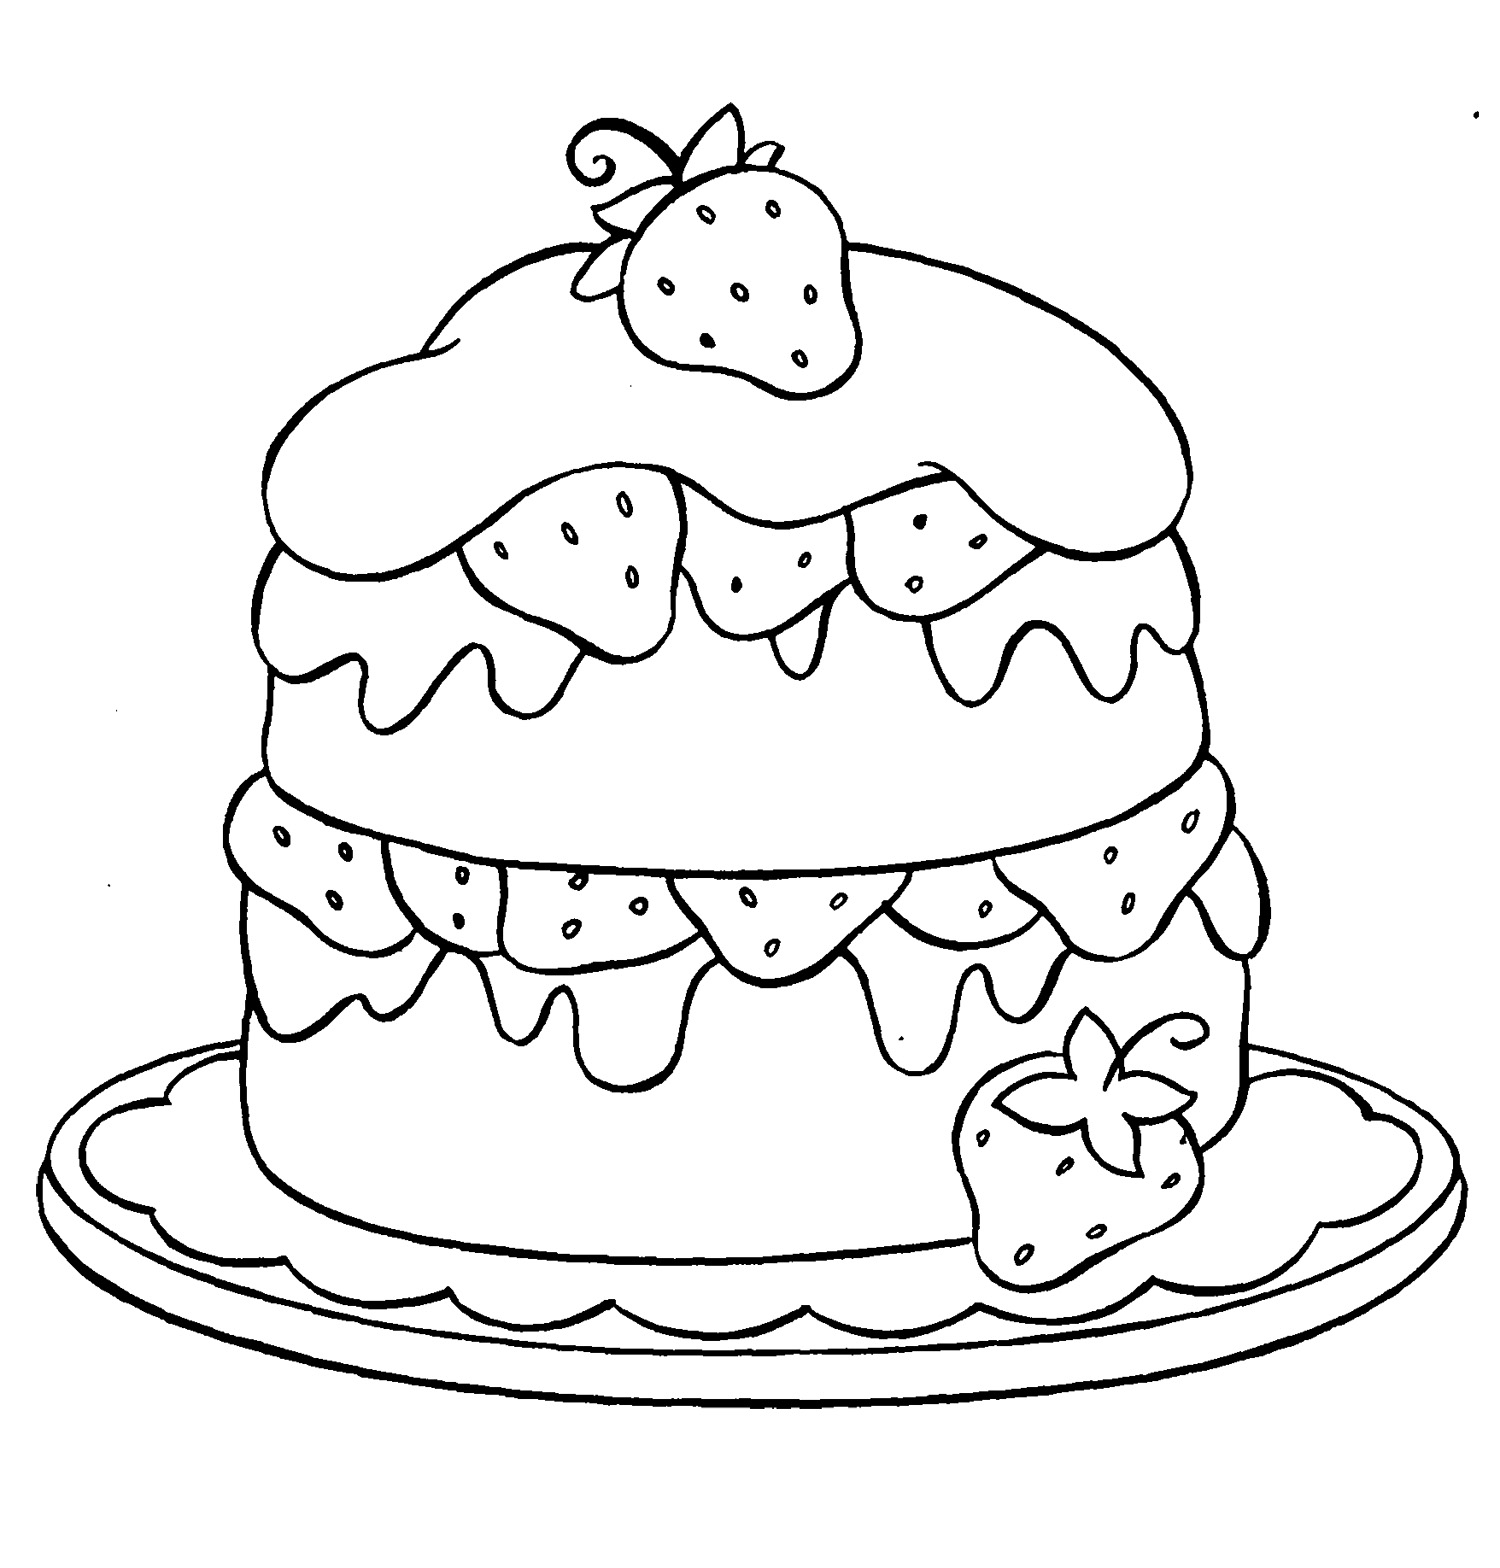 Cute Cupcake Drawing at GetDrawings | Free download